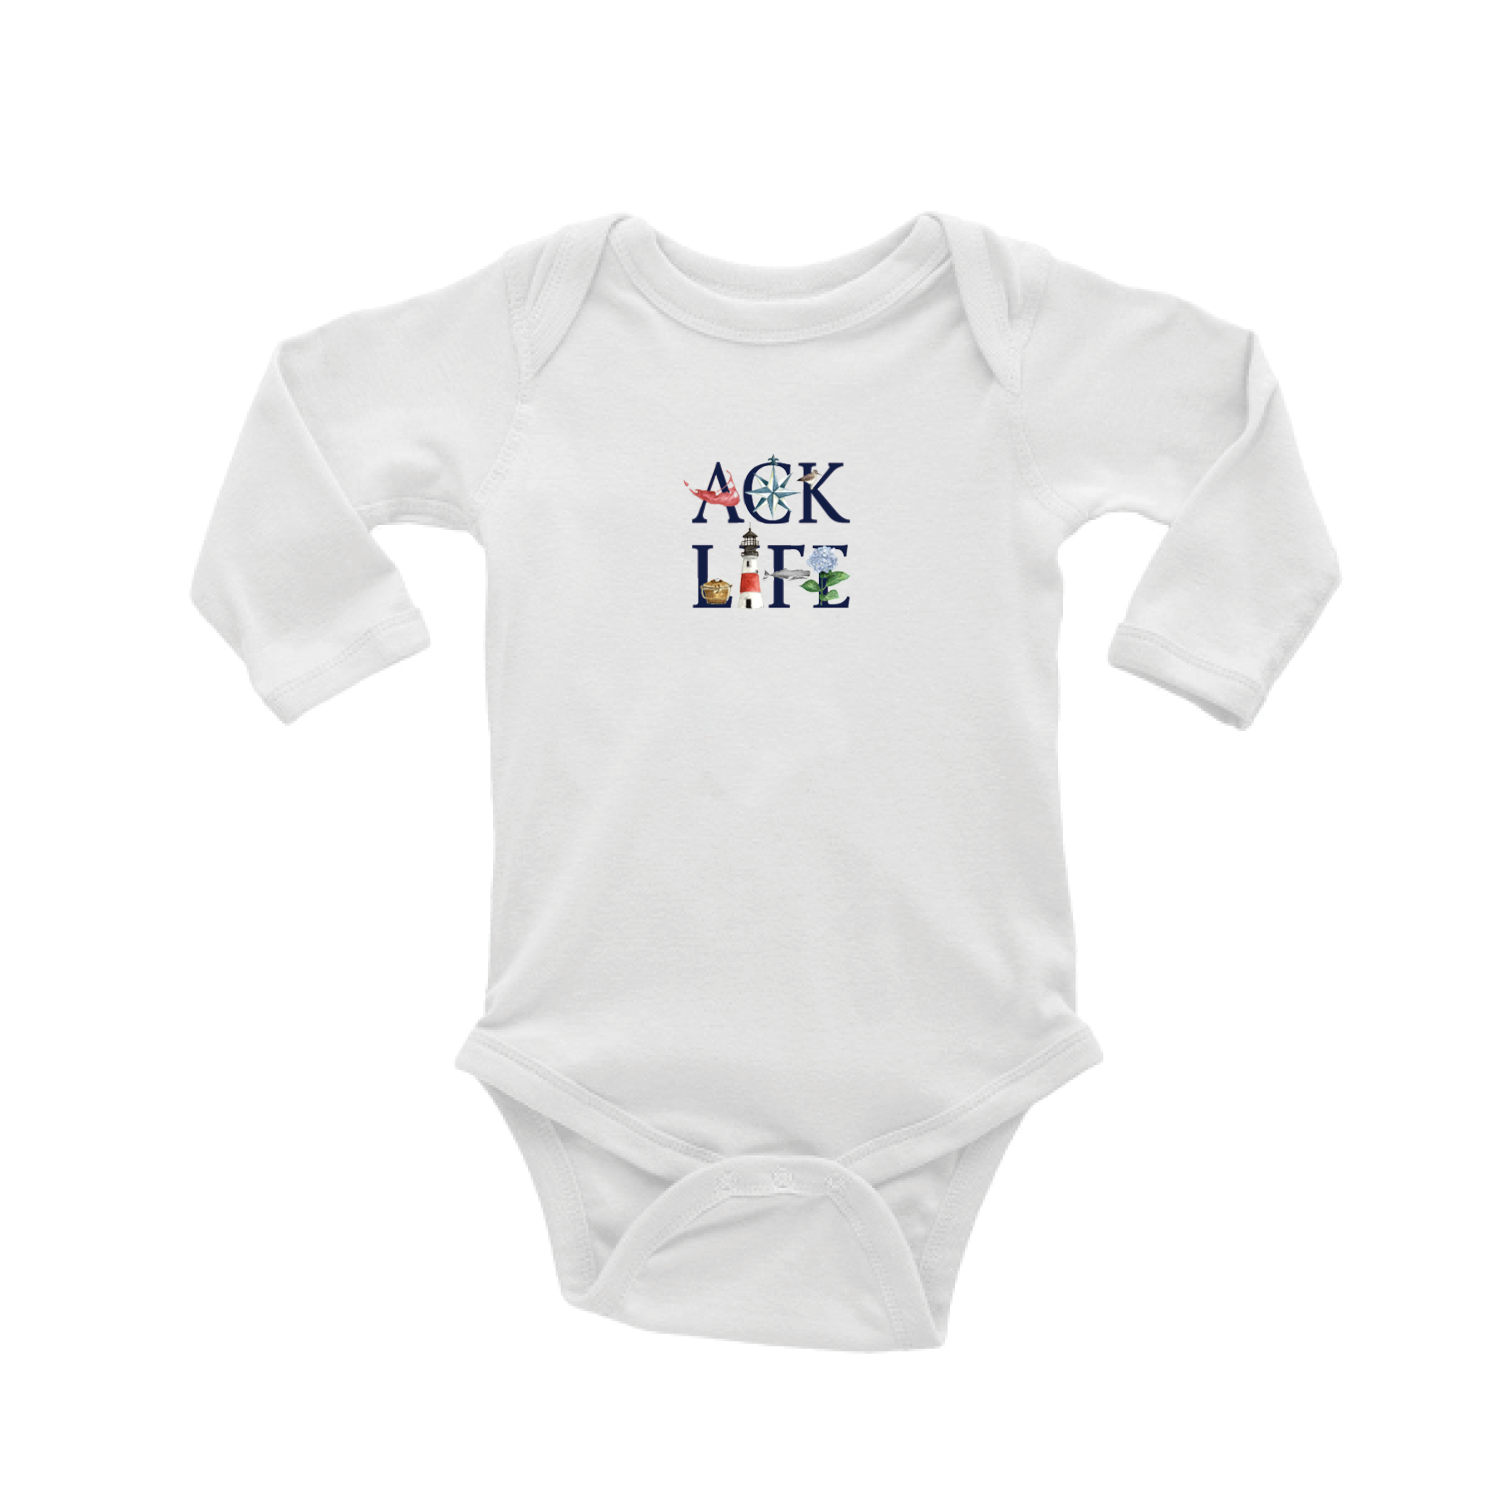 ACK LIFE Nantucket baby snap up long sleeve